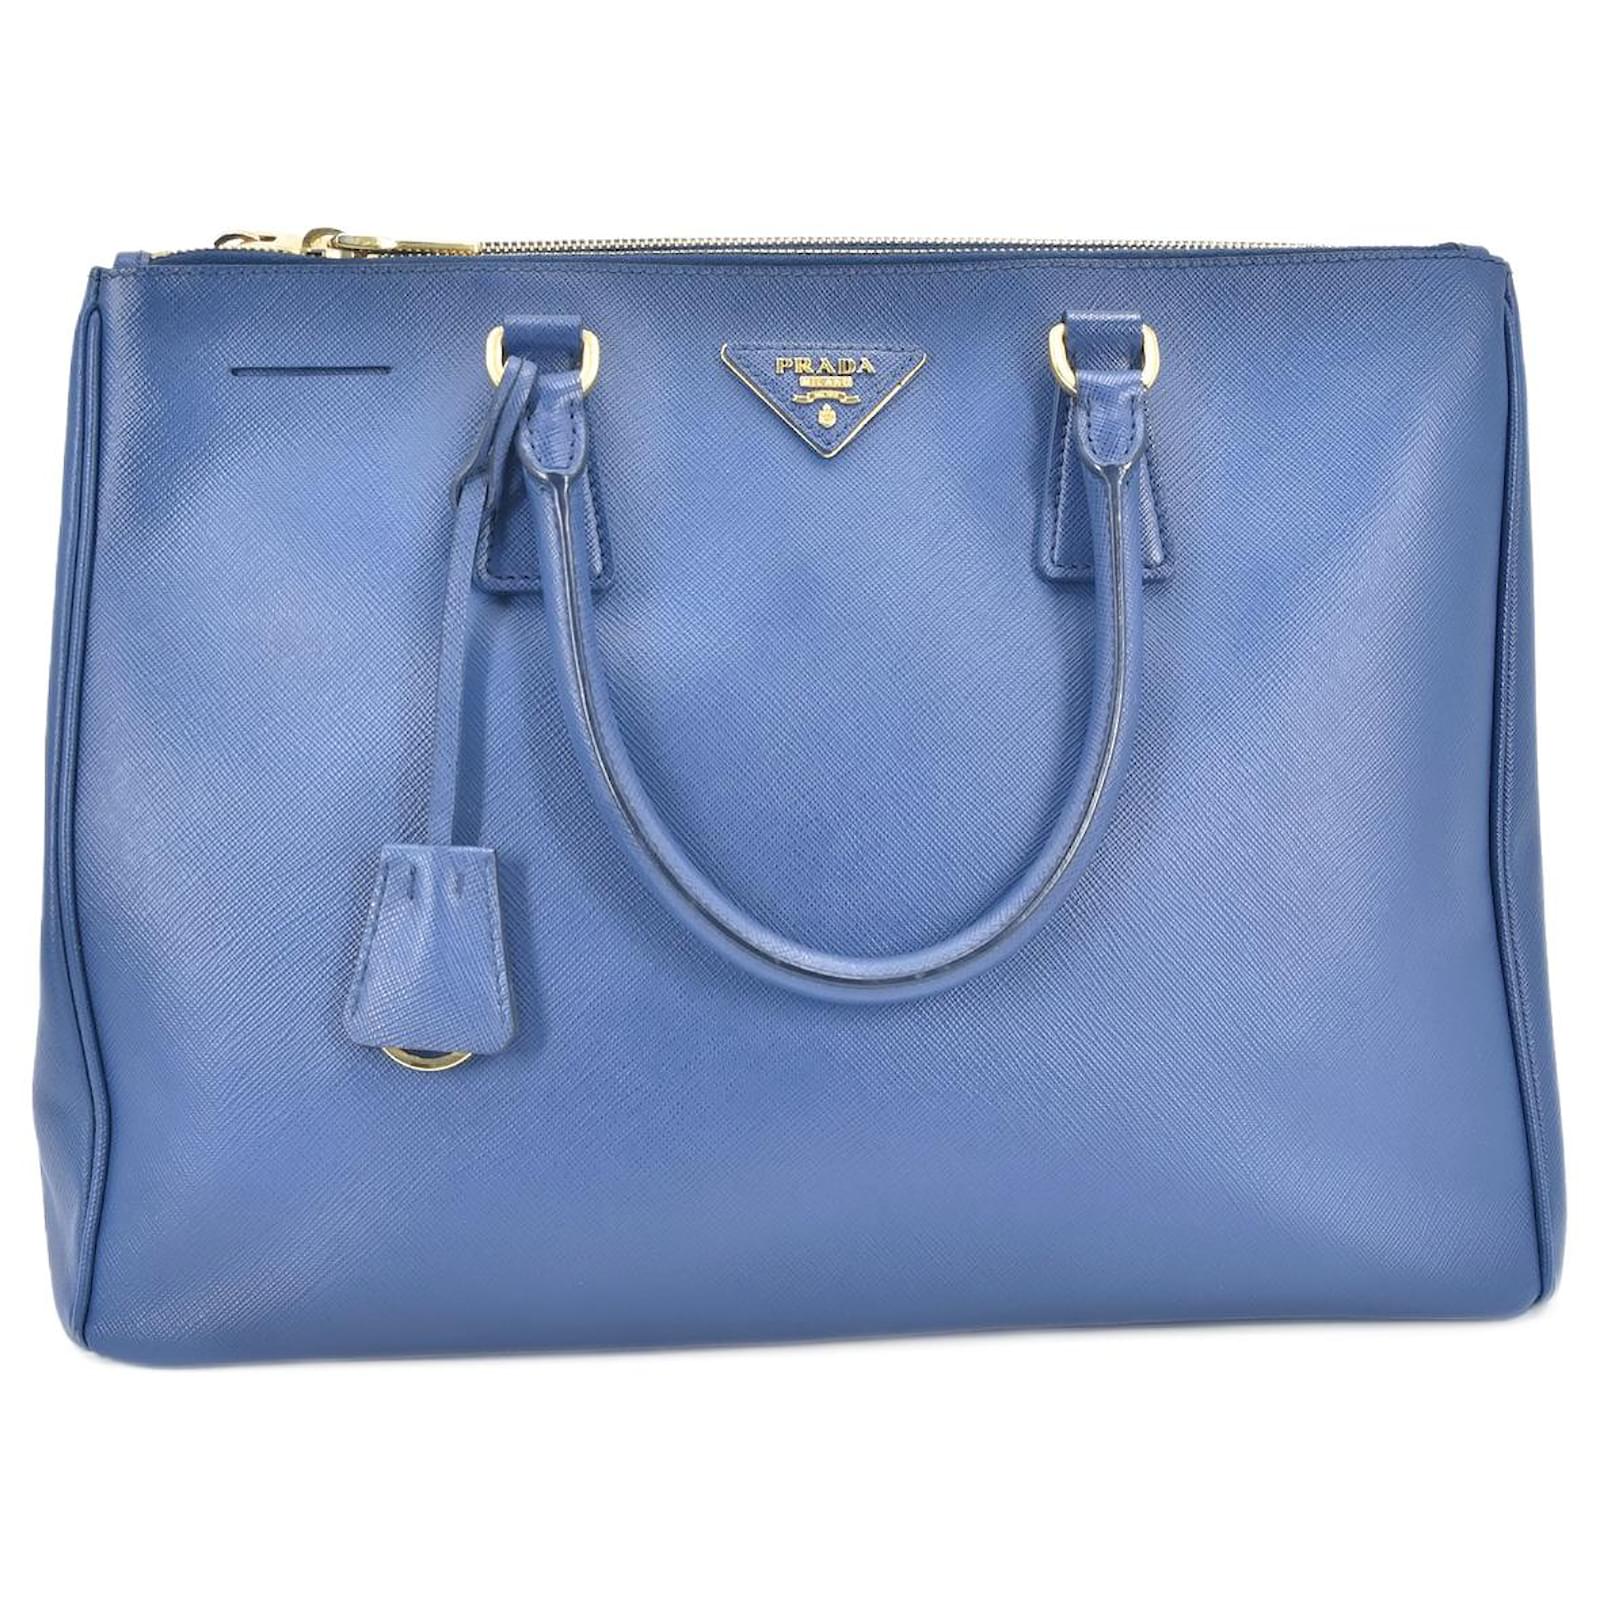 Prada Saffiano Galleria lined Zip Handbag Blue Pony-style calfskin